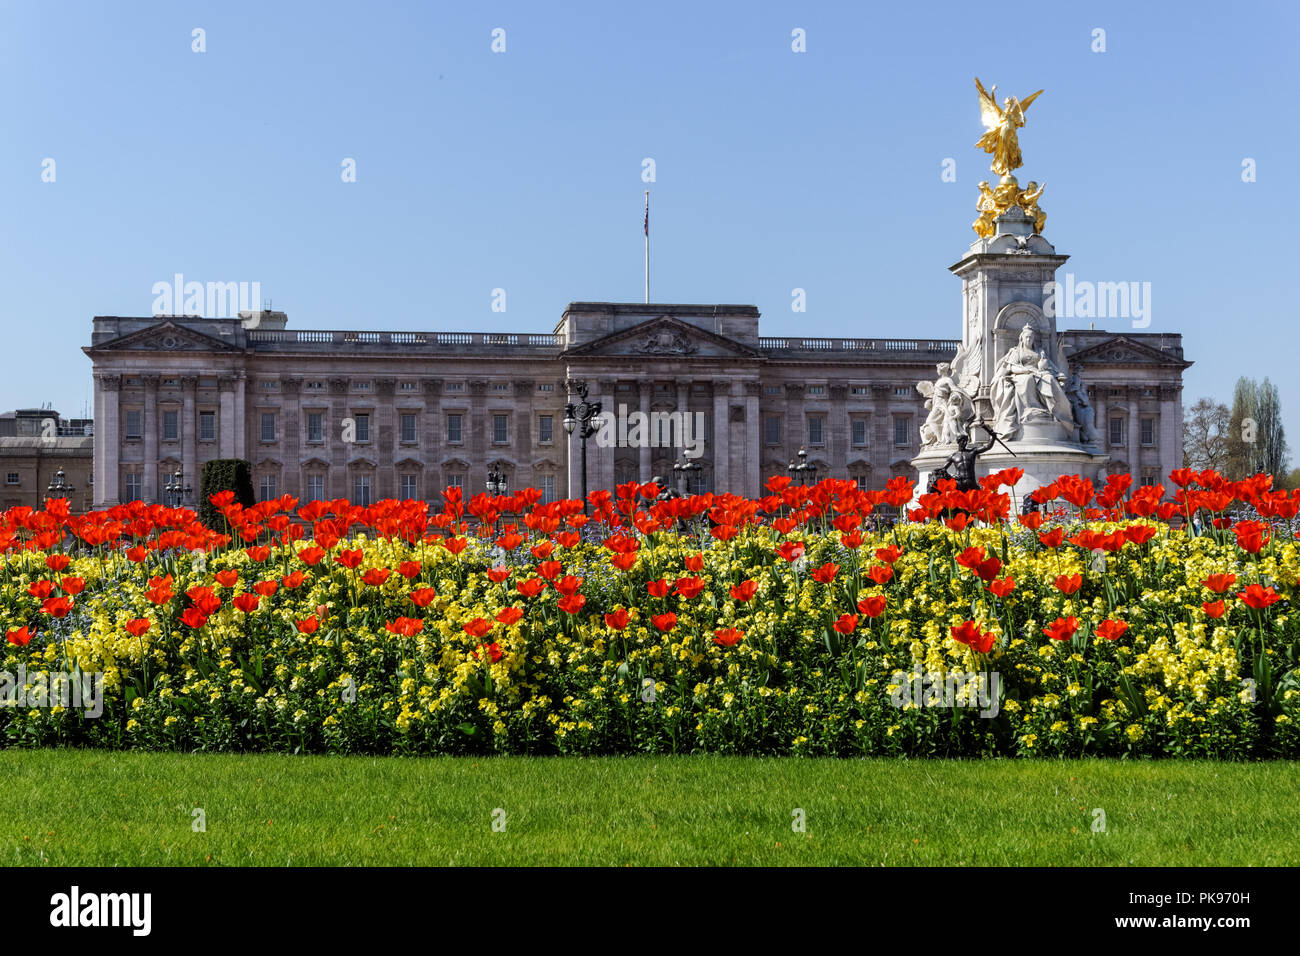 Le palais de Buckingham avec Mémorial Victoria à Londres, Angleterre Royaume-Uni UK Banque D'Images